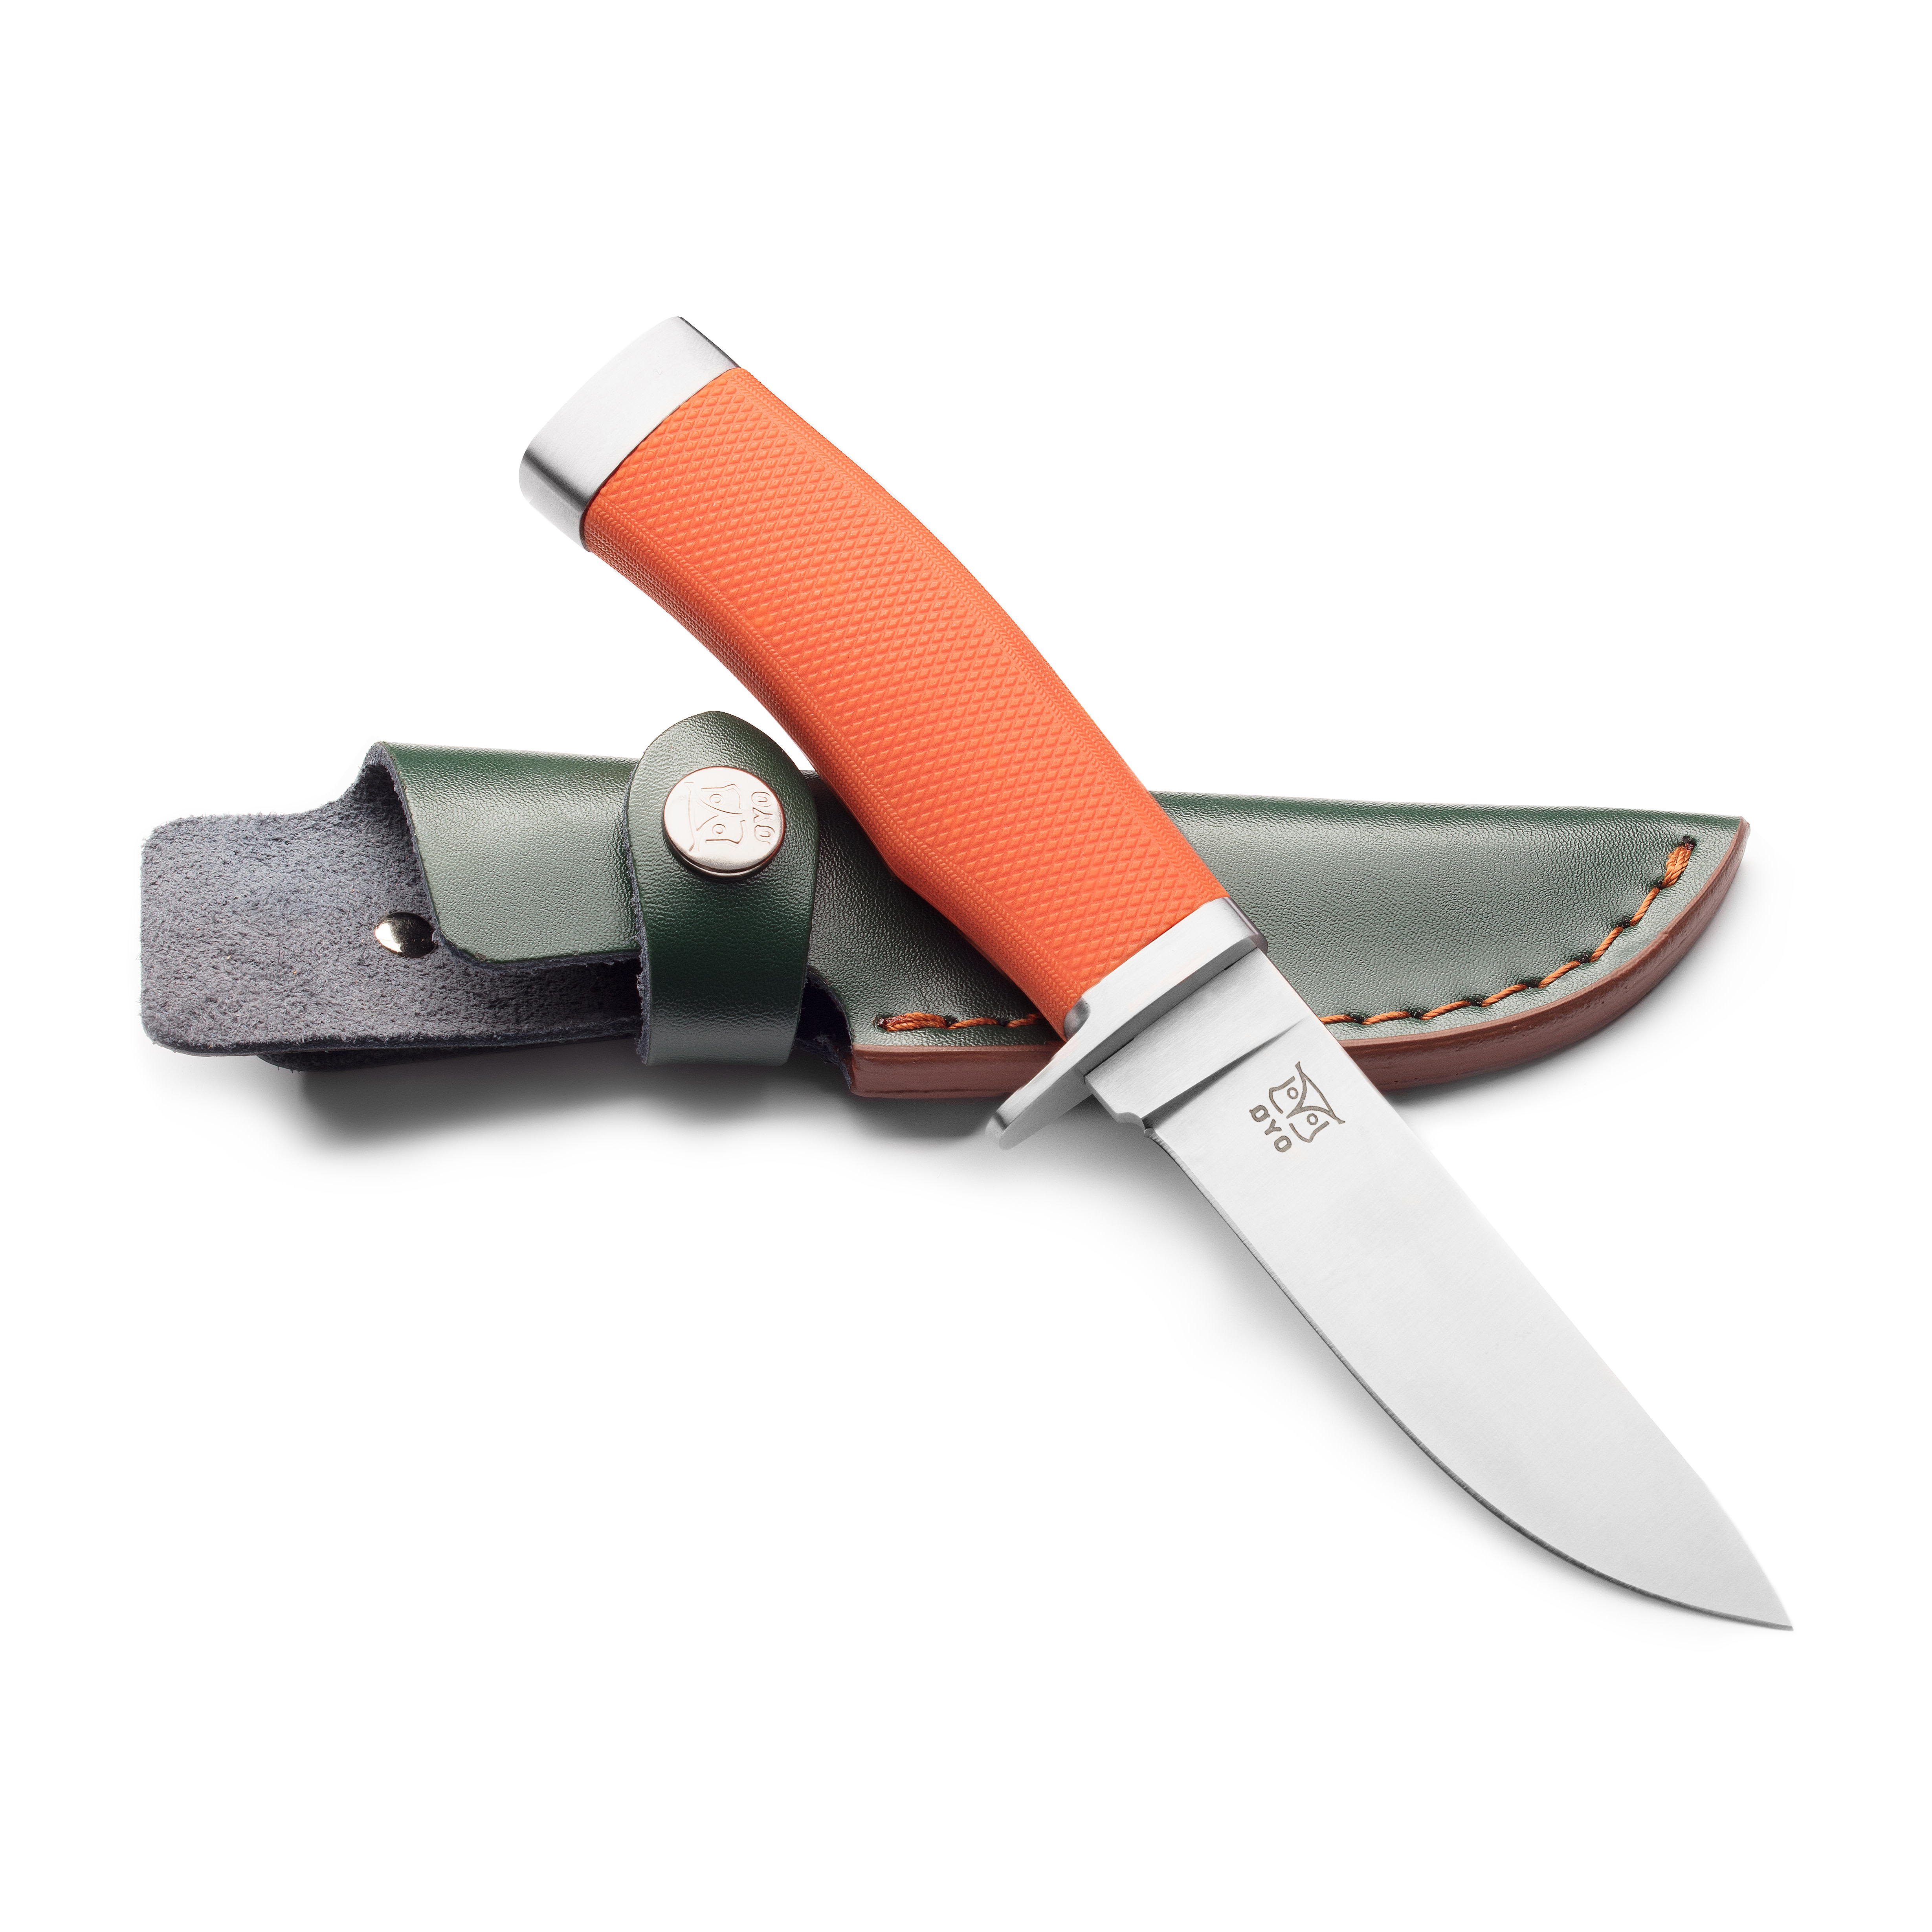 Øyo Finnskogen Knife with Leather Sheath